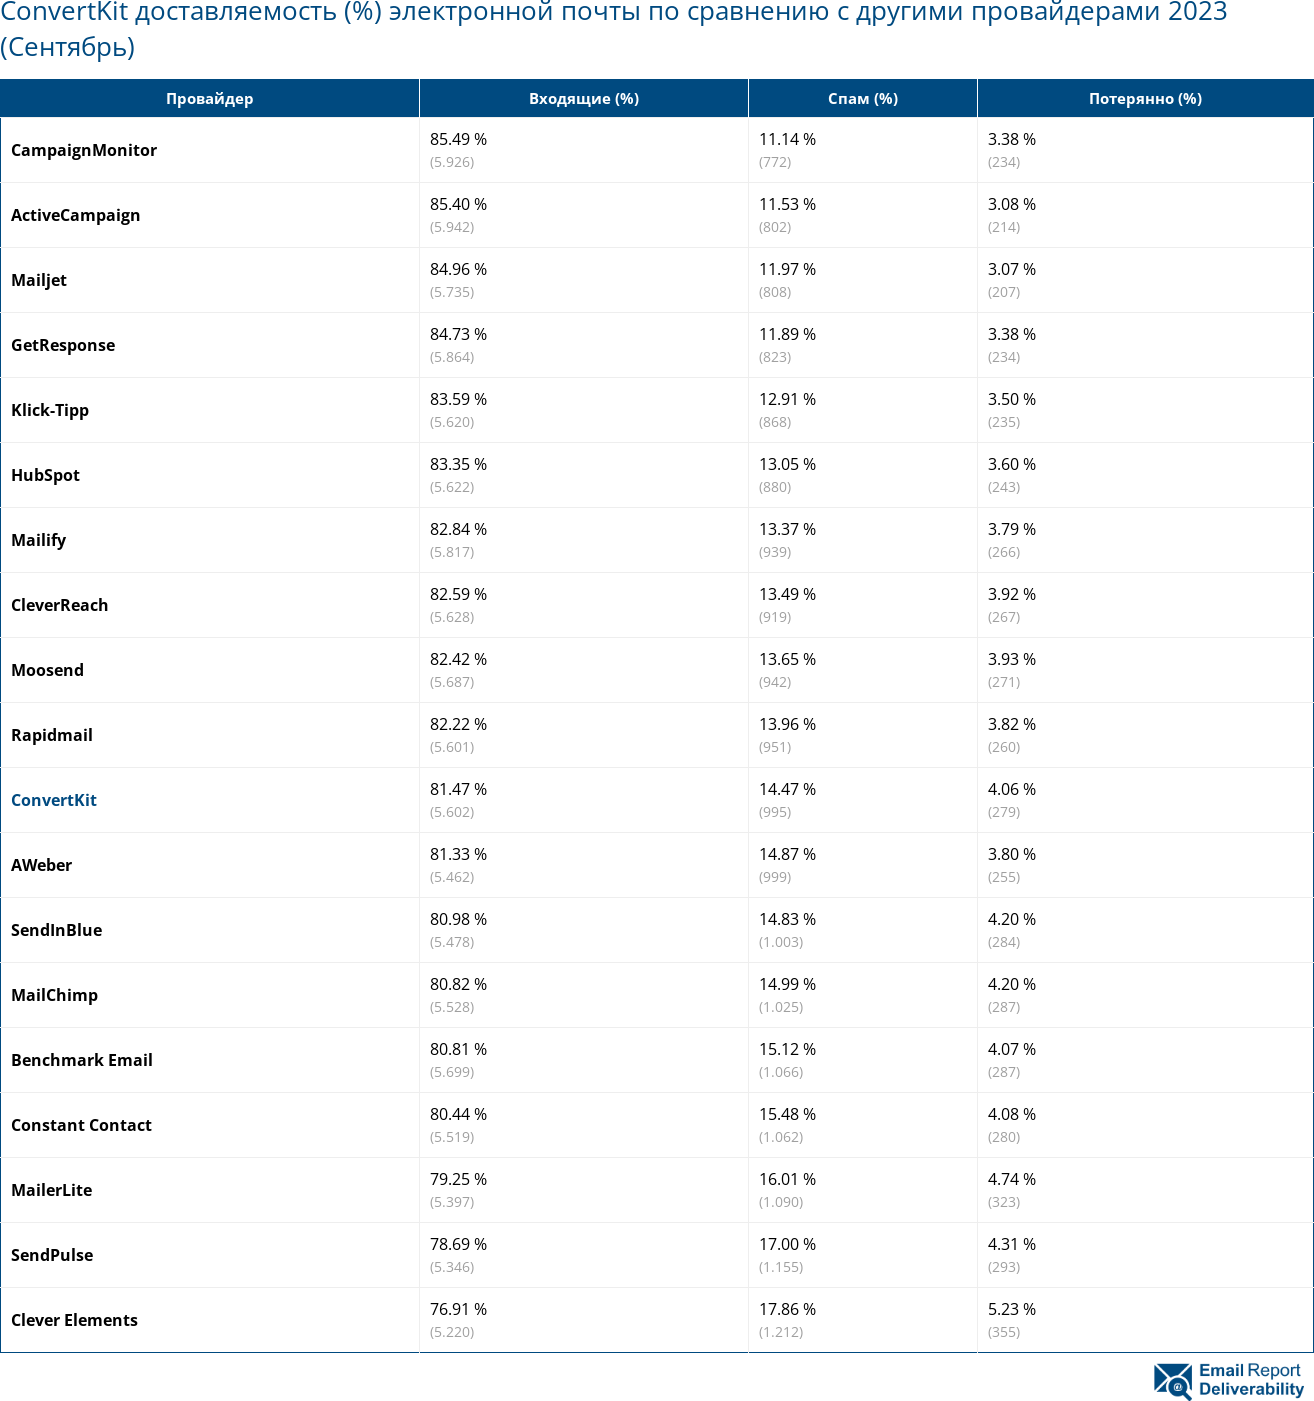 ConvertKit доставляемость (%) электронной почты по сравнению с другими провайдерами 2023 (Сентябрь)